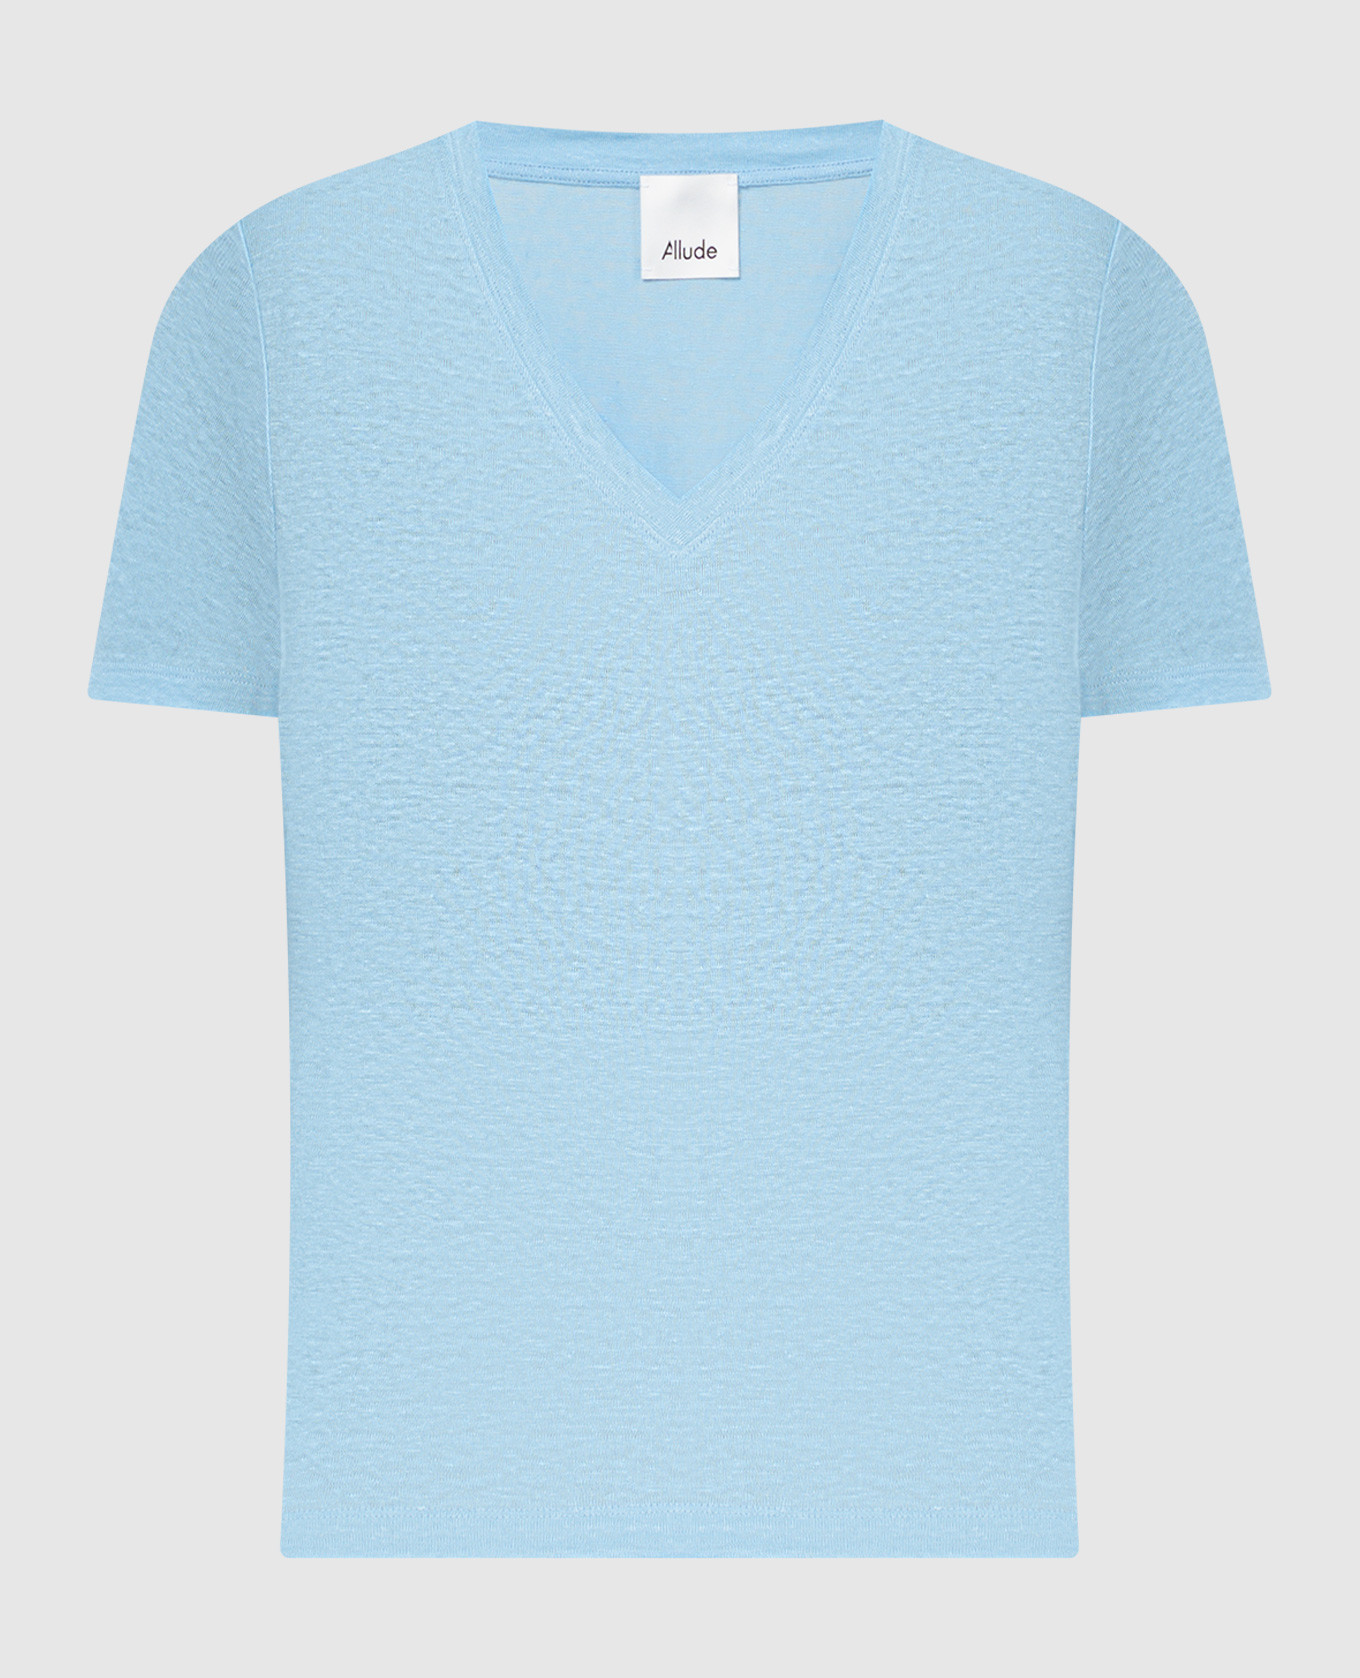 Blue linen T-shirt